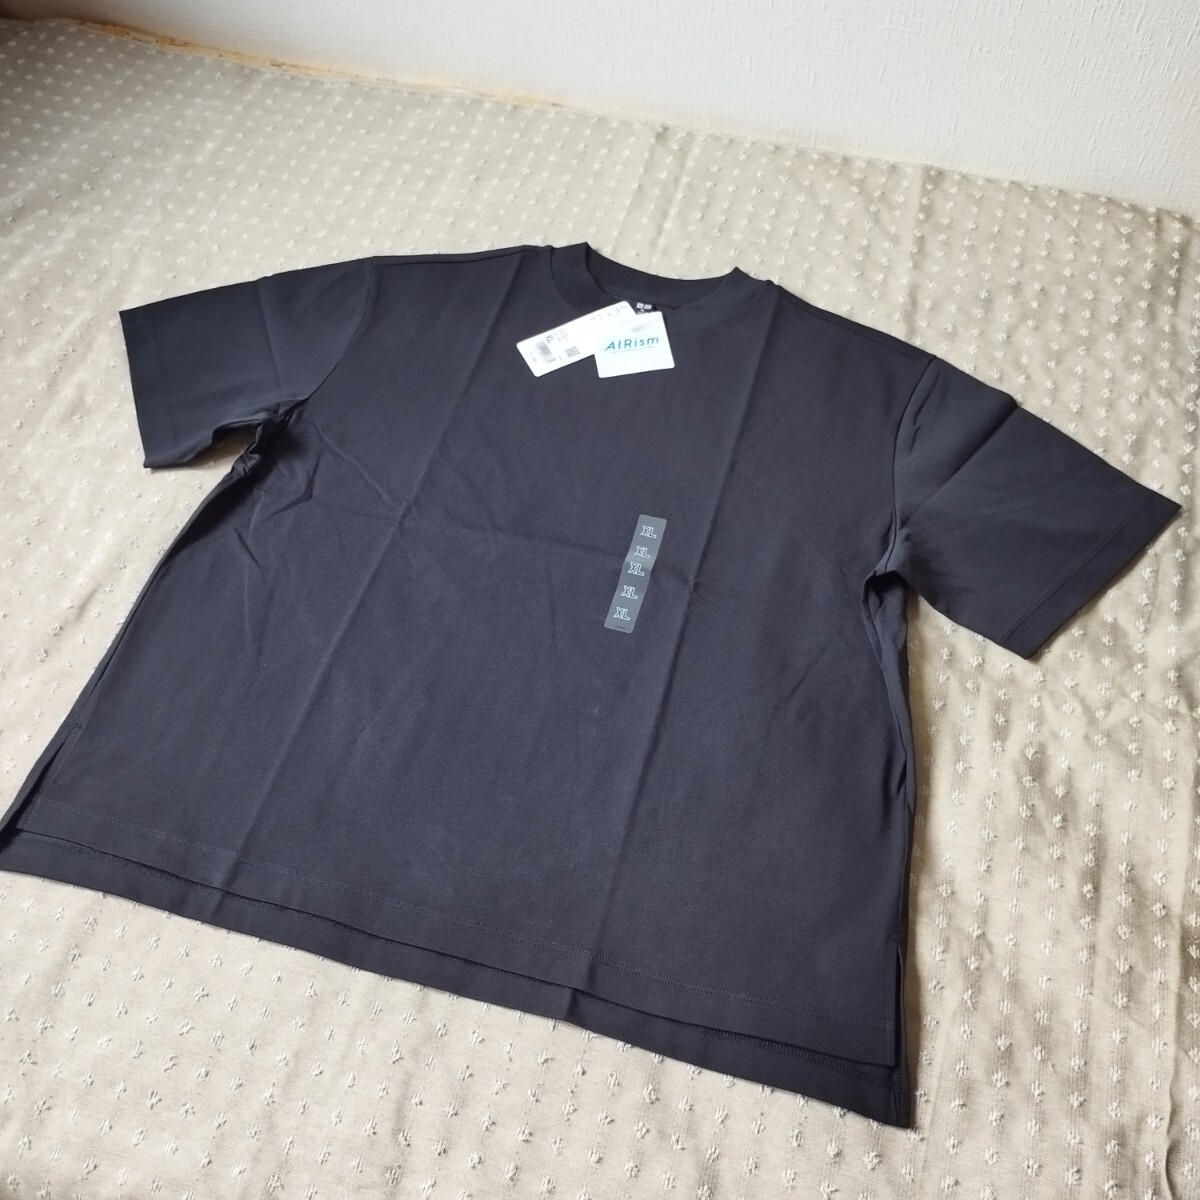 未使用 タグ付 ユニクロ UNIQLO エアリズム コットンT 黒 ゆったりシルエット XL 半袖 Tシャツ●色size違い有●ネコポス 送料無料の画像1